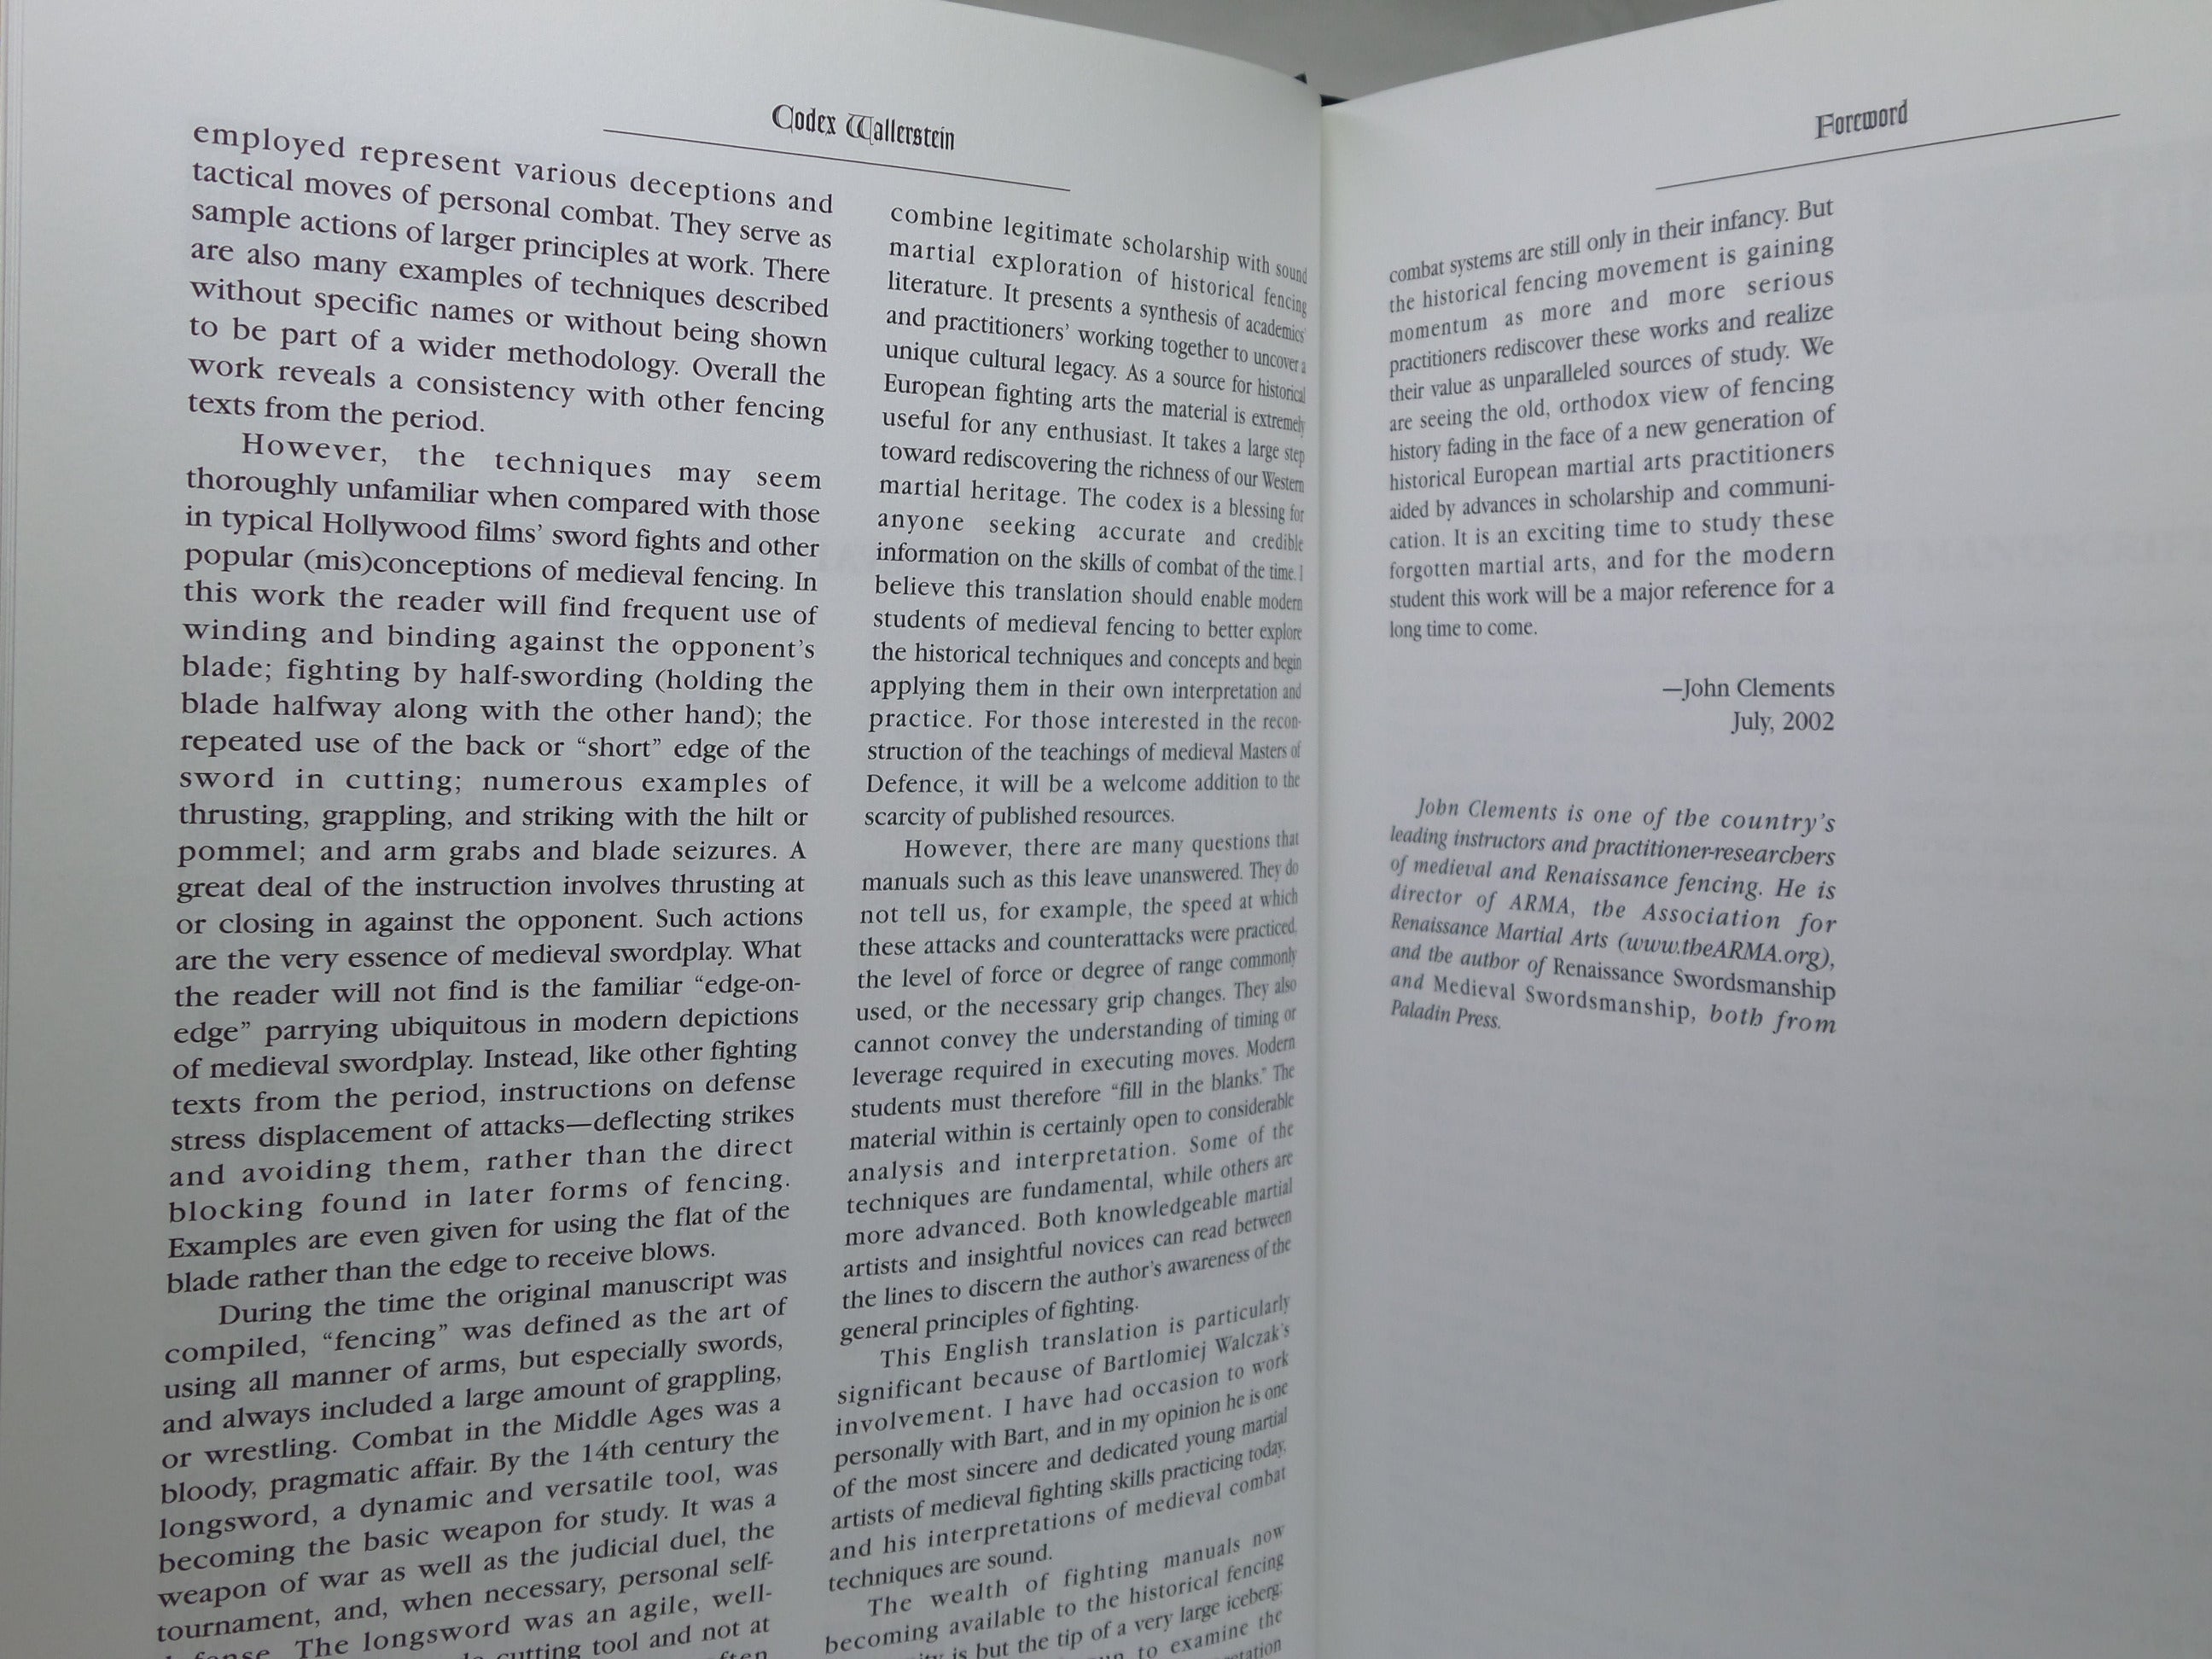 CODEX WALLERSTEIN: A MEDIEVAL FIGHTING BOOK 2002 GRZEGORZ ZABINSKI FIRST EDITION